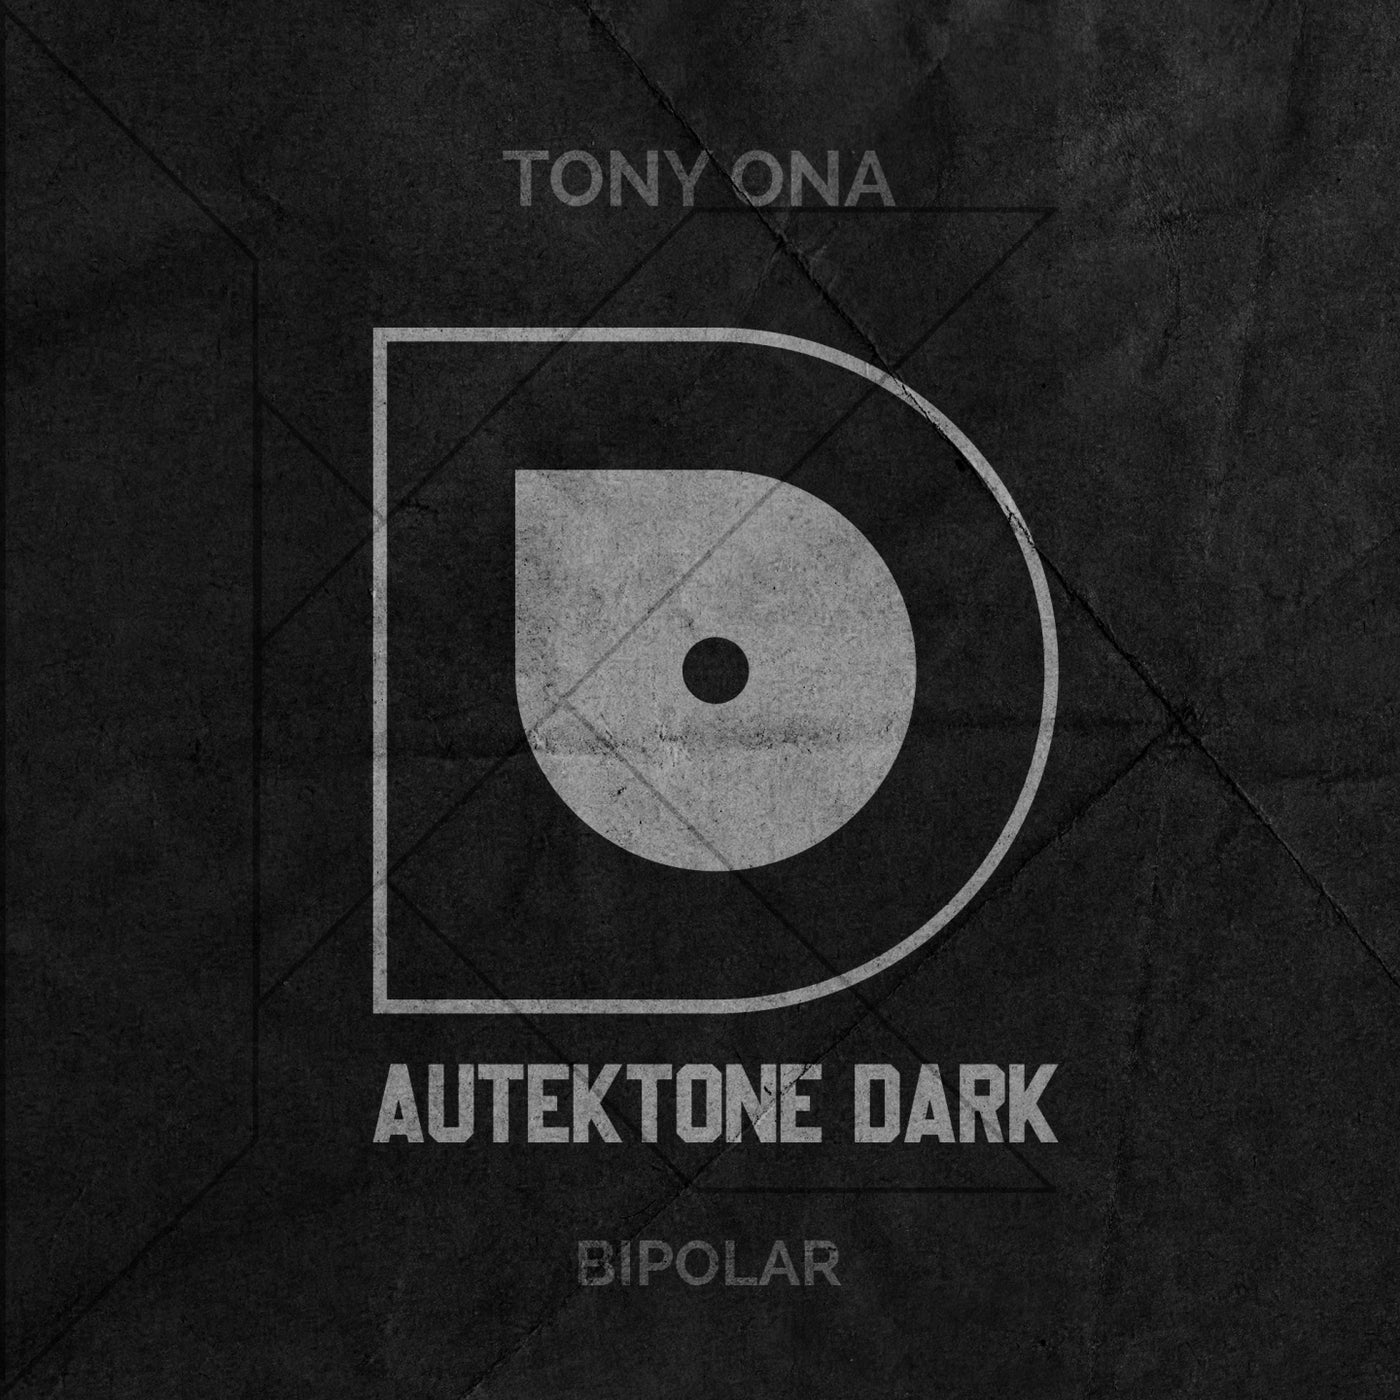 Tony Ona - Bipolar [AUTEKTONE DARK]